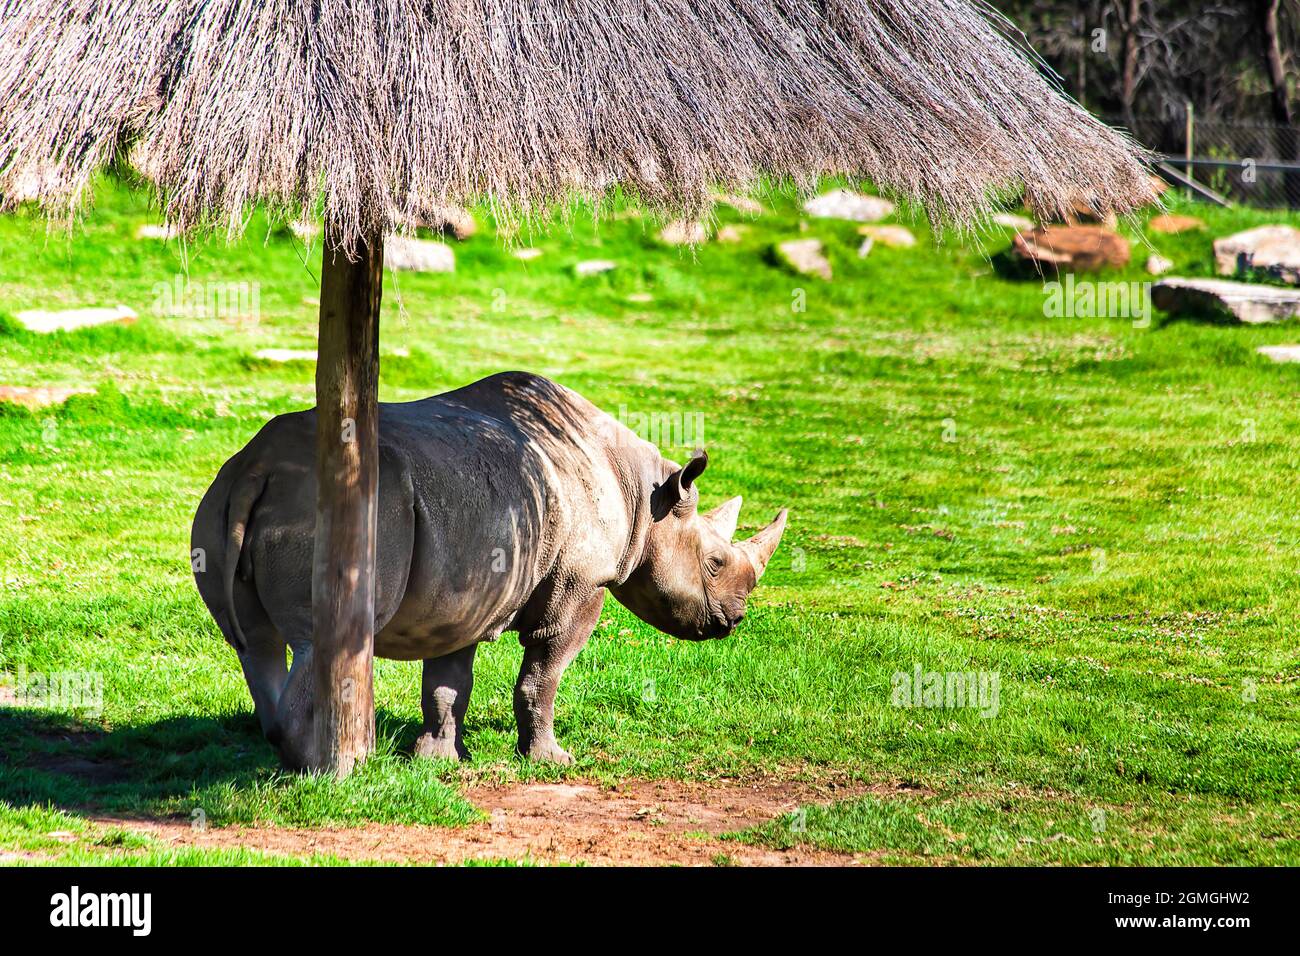 Rhinocéros blanc noir dans un environnement protégé de faune sauvage sauvage sauvage sauvage en voie de disparition espèces de la réserve australienne, Dubbo, plaines occidentales. Banque D'Images